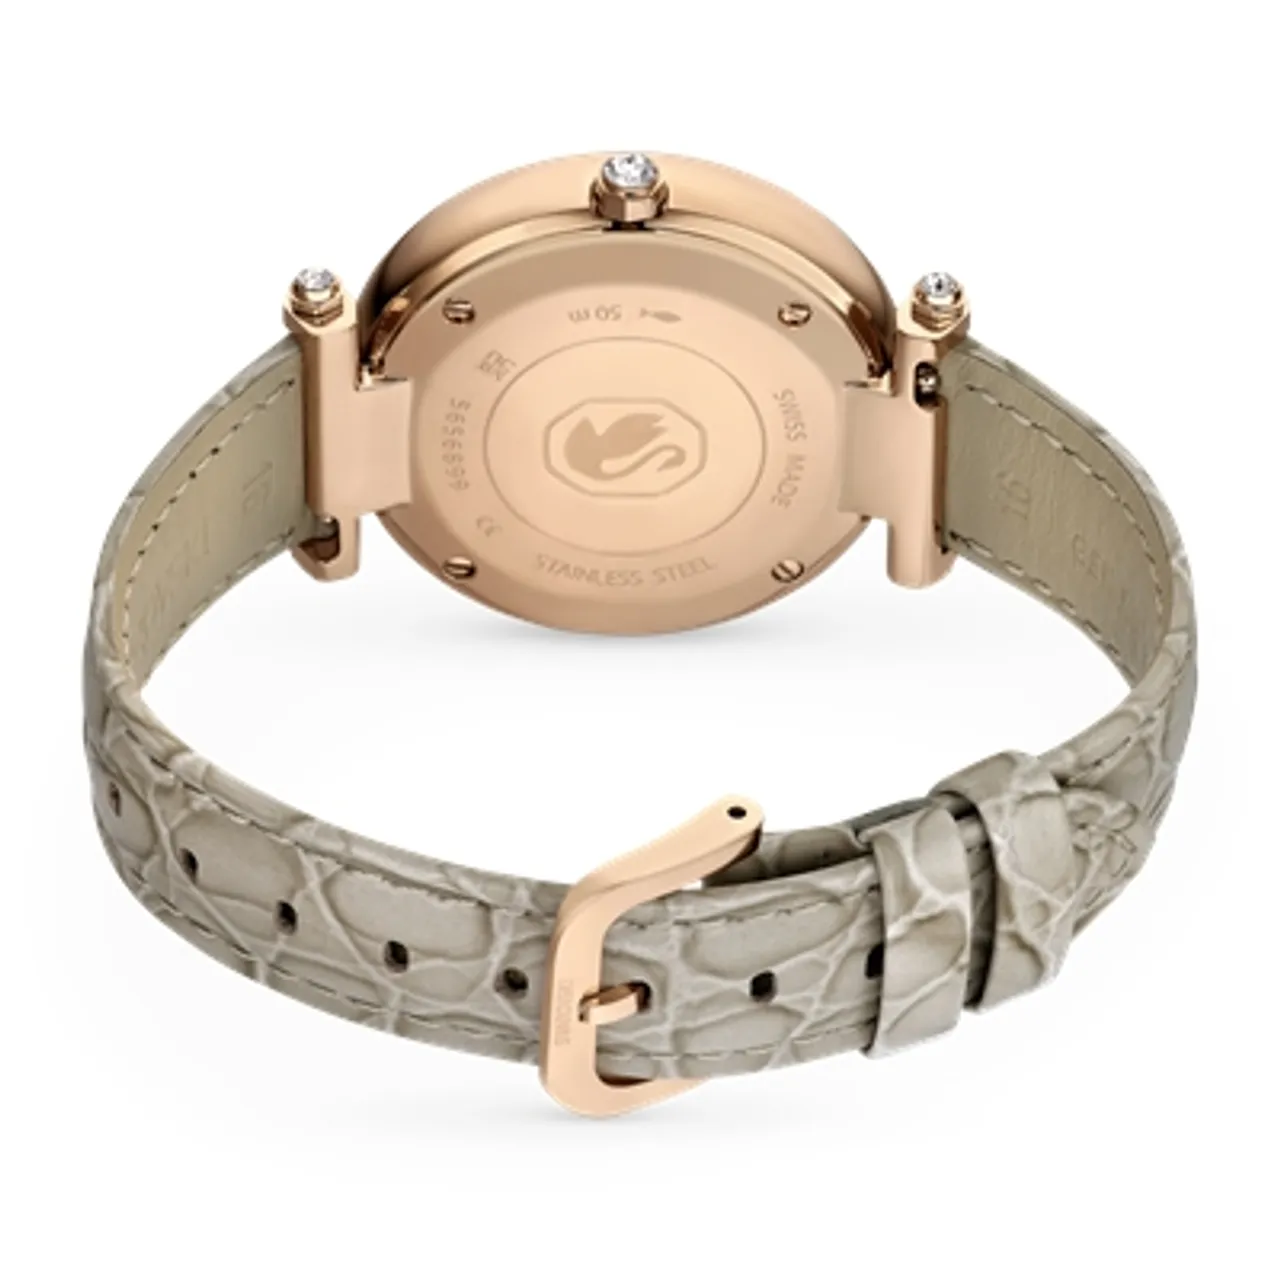 Swarovski Crystalline Wonder Beige Leather Rose Gold Tone Watch